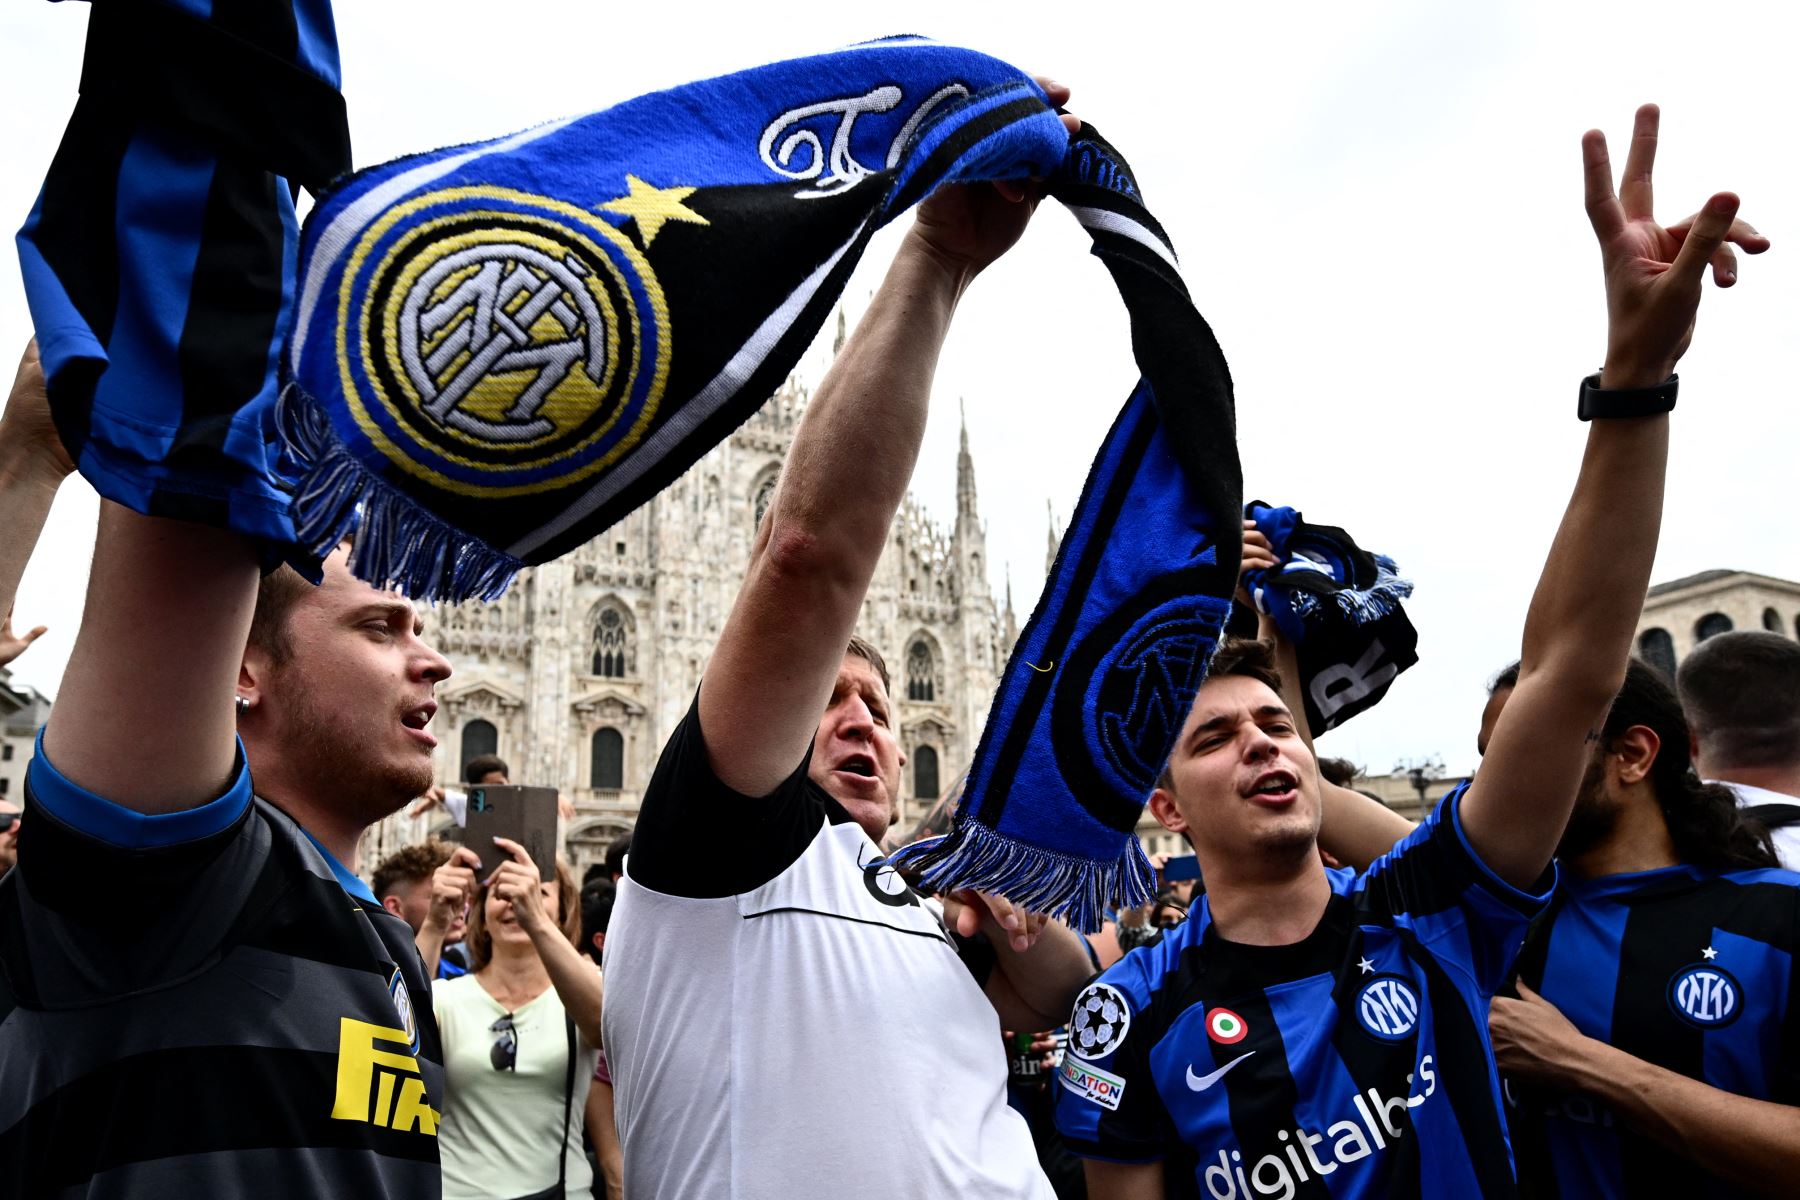 Los hinchas del Inter de Milán animan en la Piazza del Duomo en Milán antes del partido de fútbol final de la Liga de Campeones de la UEFA entre el Inter de Milán y el Manchester City en el Estadio Olímpico Ataturk de Estambul.
Foto: AFP